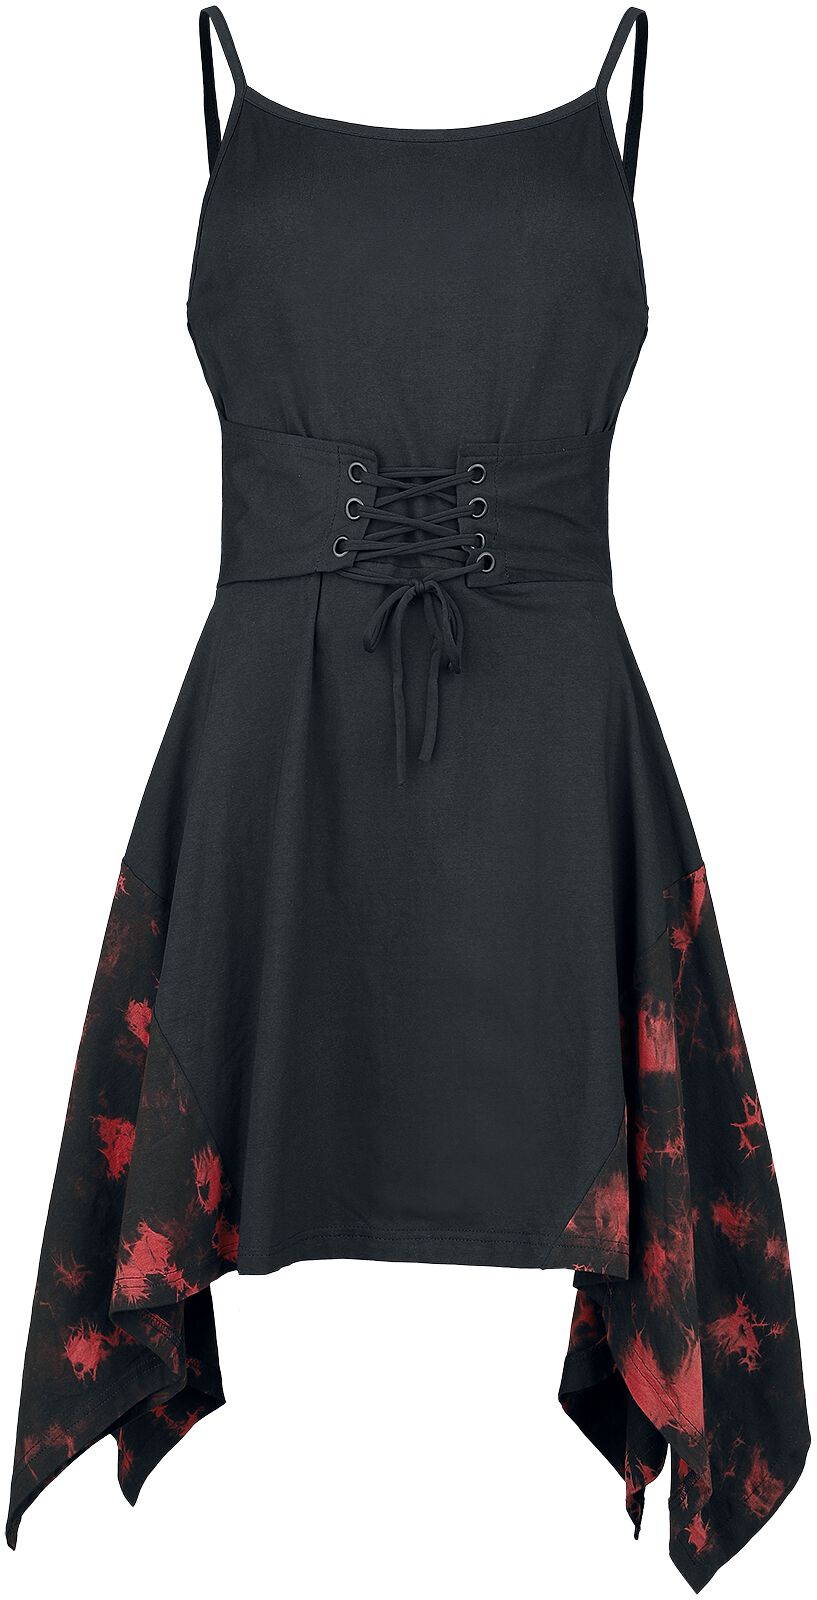 Robe courte Gothic de Poizen Industries - Elrene Dress - S à 4XL - pour Femme - noir/rouge